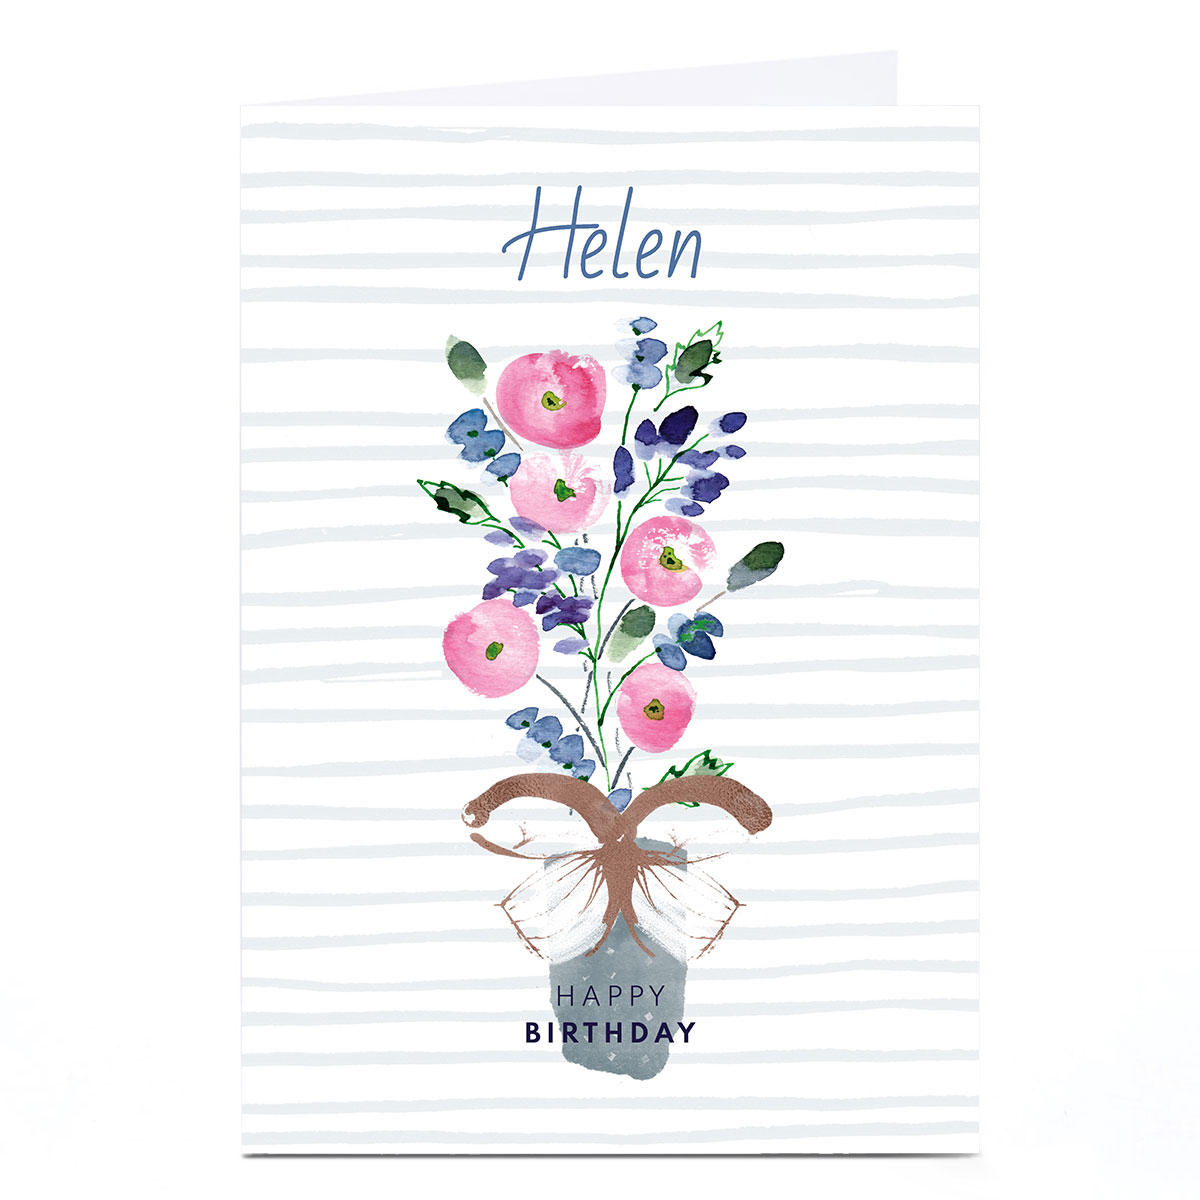 Personalised Rebecca Prinn Birthday Card - Flower Vase